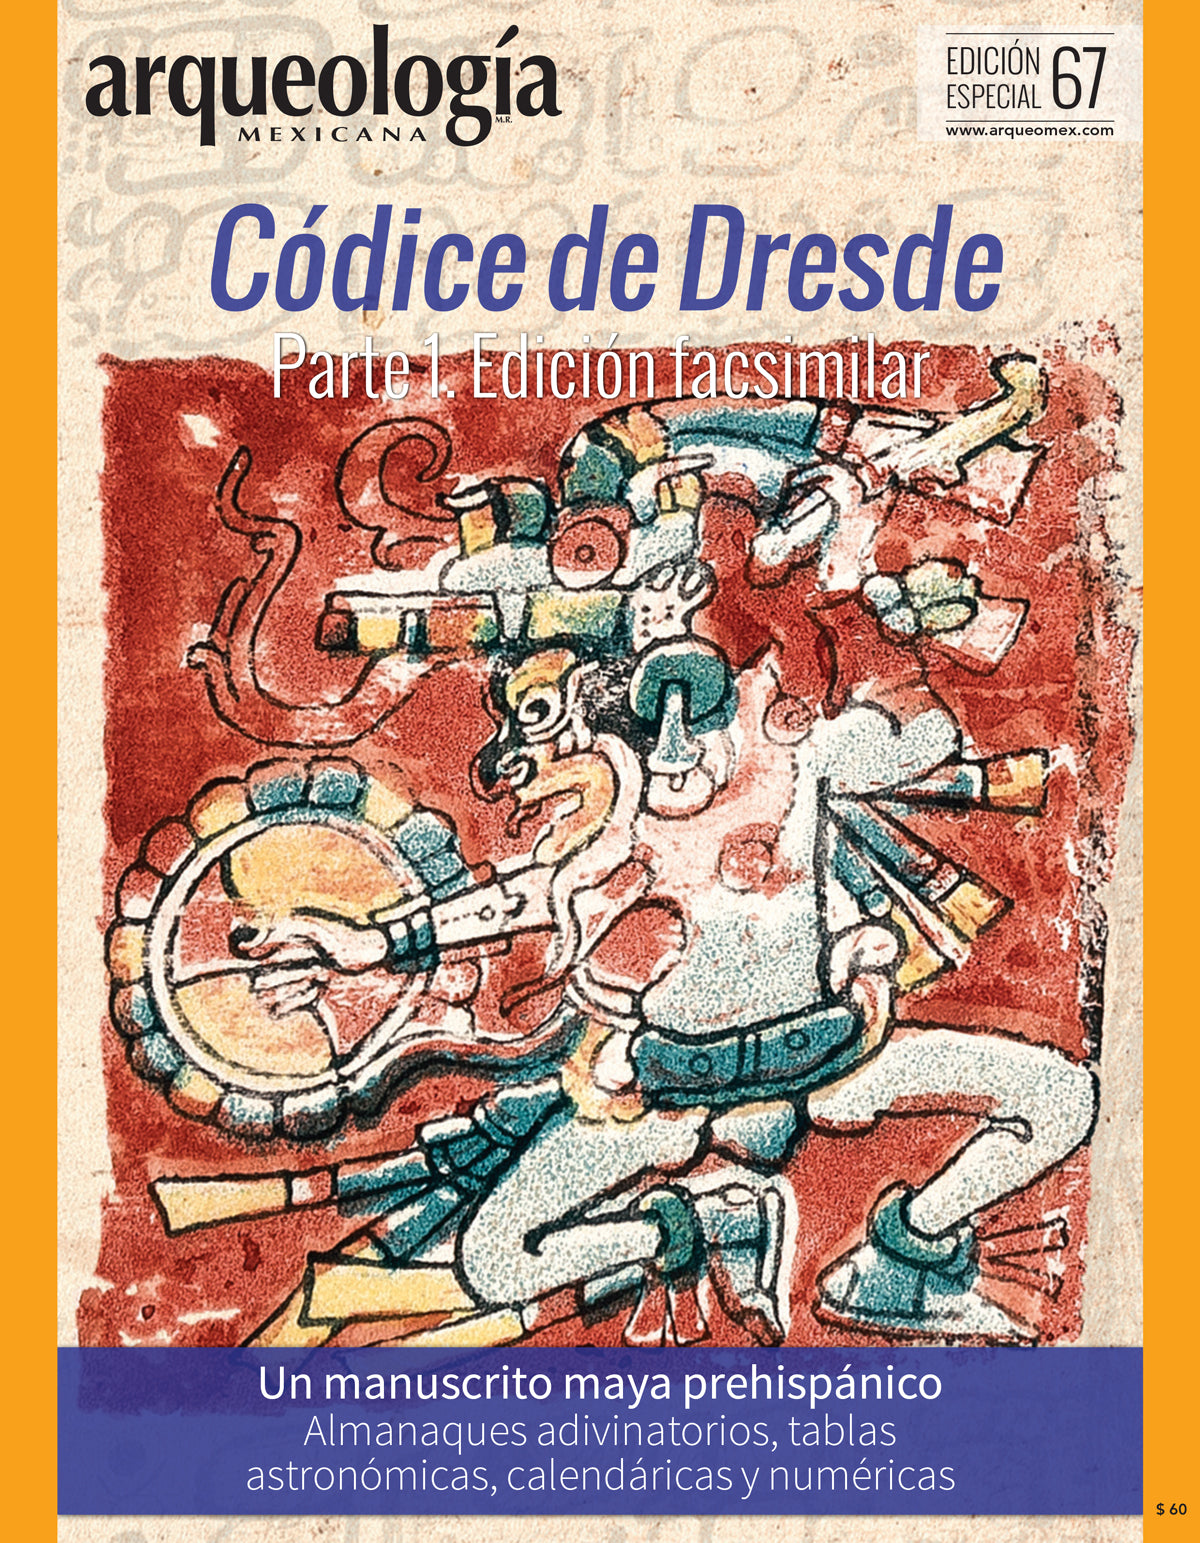 Códice de Dresde. Parte 1. Edición facsimilar